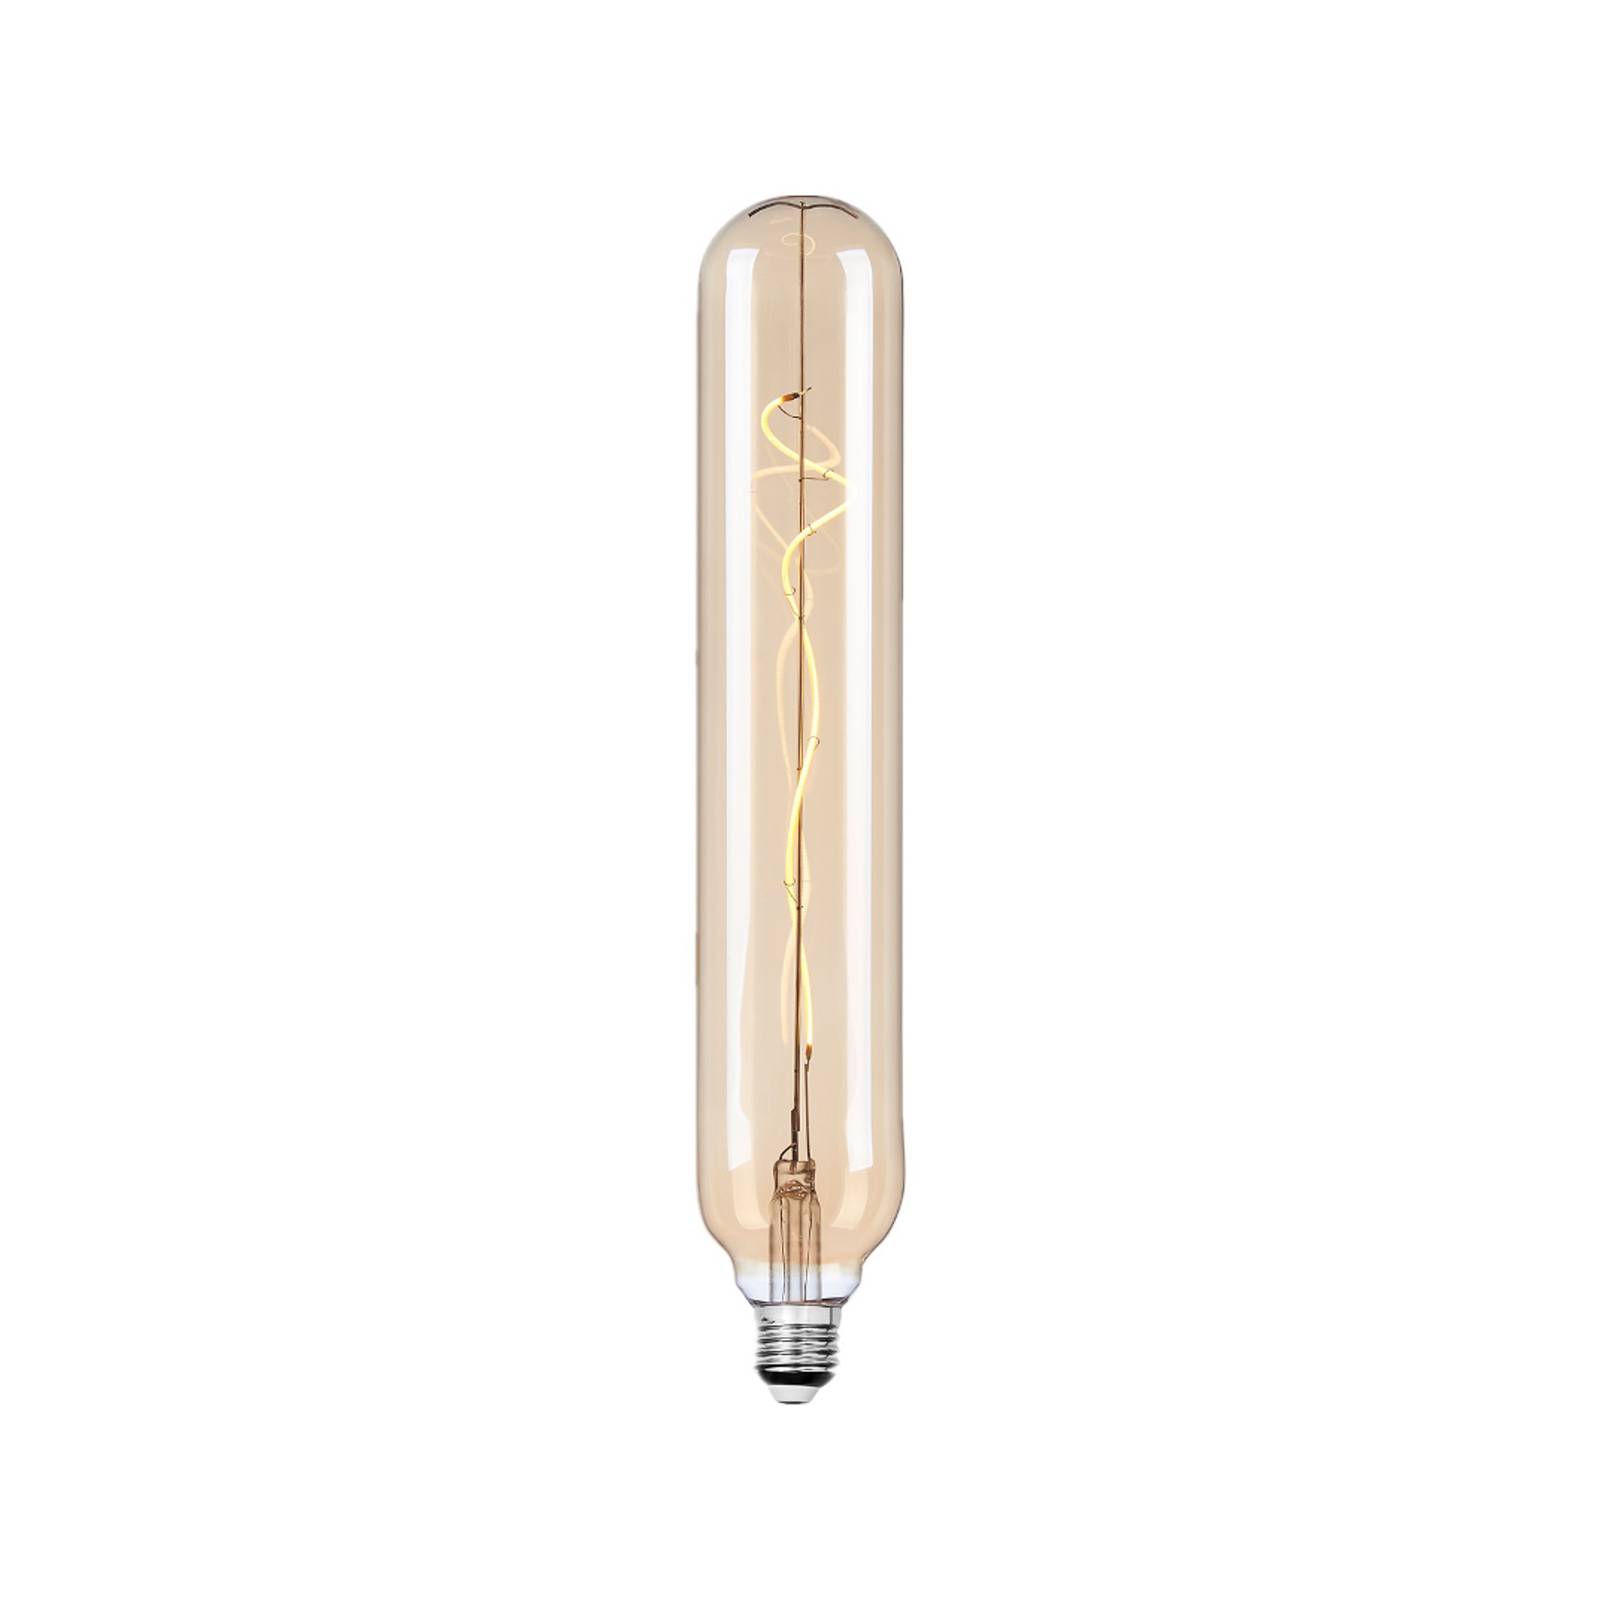 Lucande LED-Lampe E27 Ø 6cm 4W 2700K amber